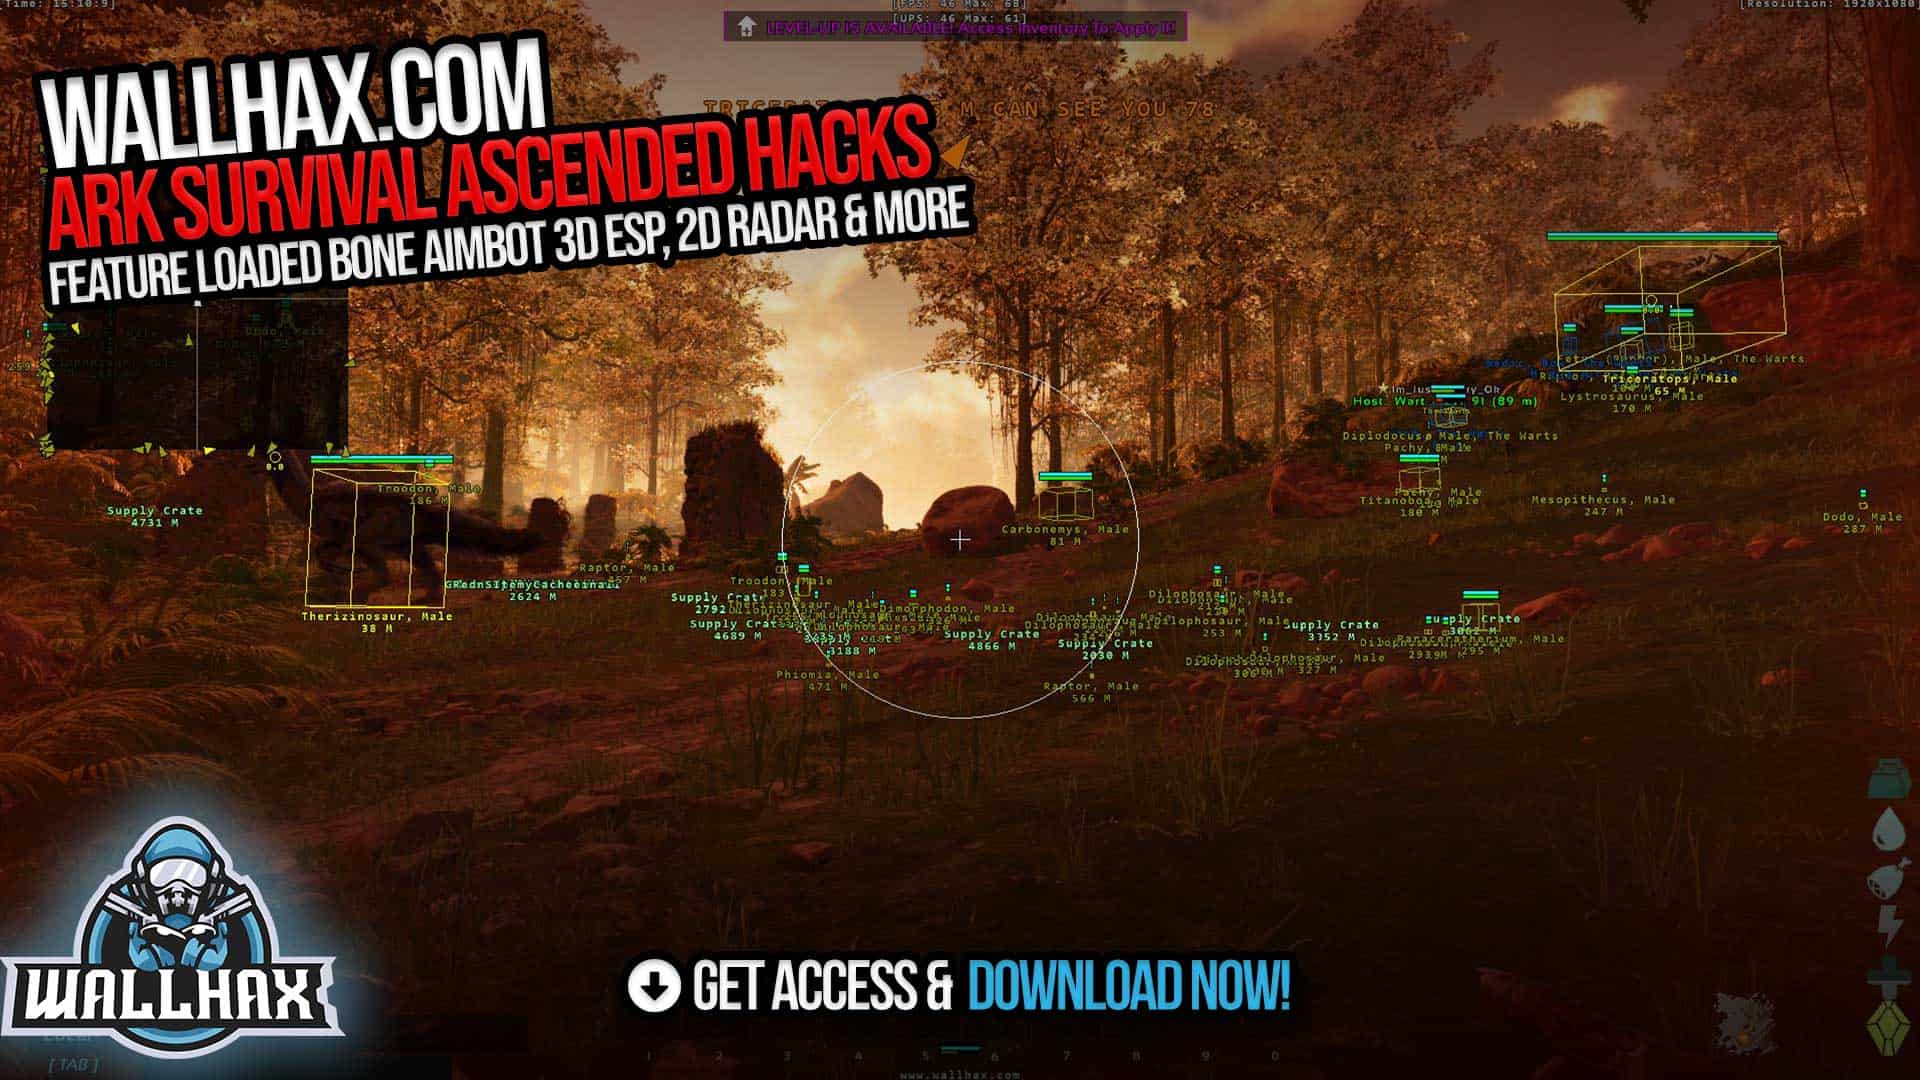 ARK Survival Ascended Hack Screenshot